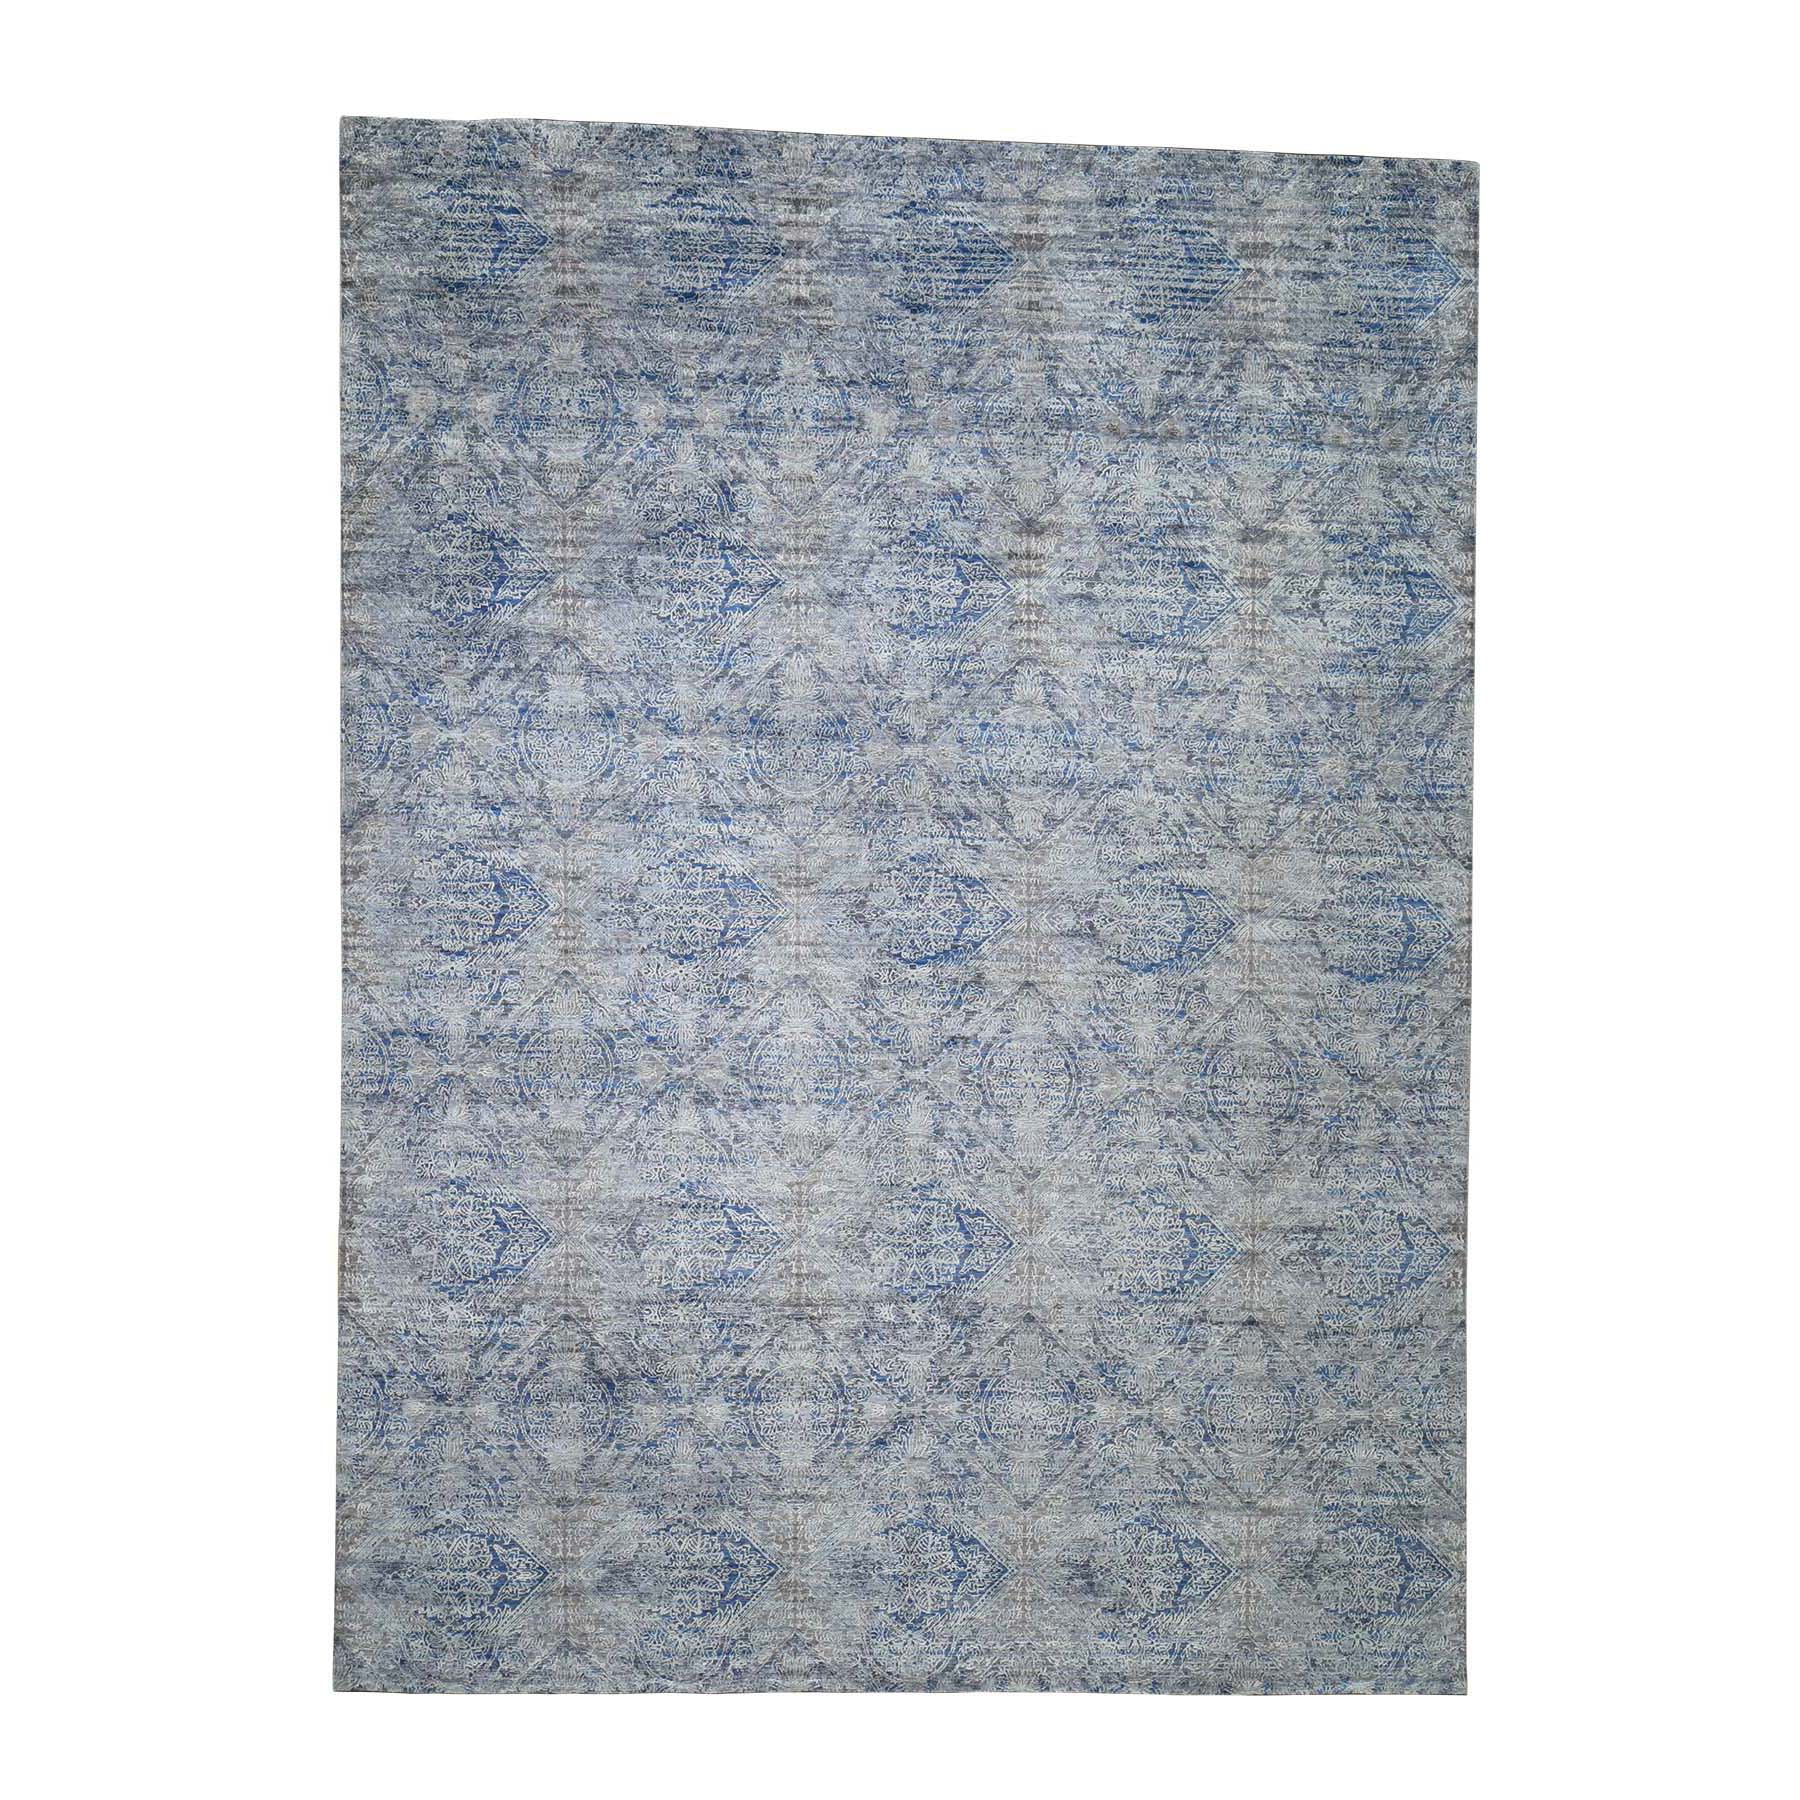 8'9"x12' Silk With Textured Wool Denim Blue Erased Rosette Design Hand Woven Oriental Rug 